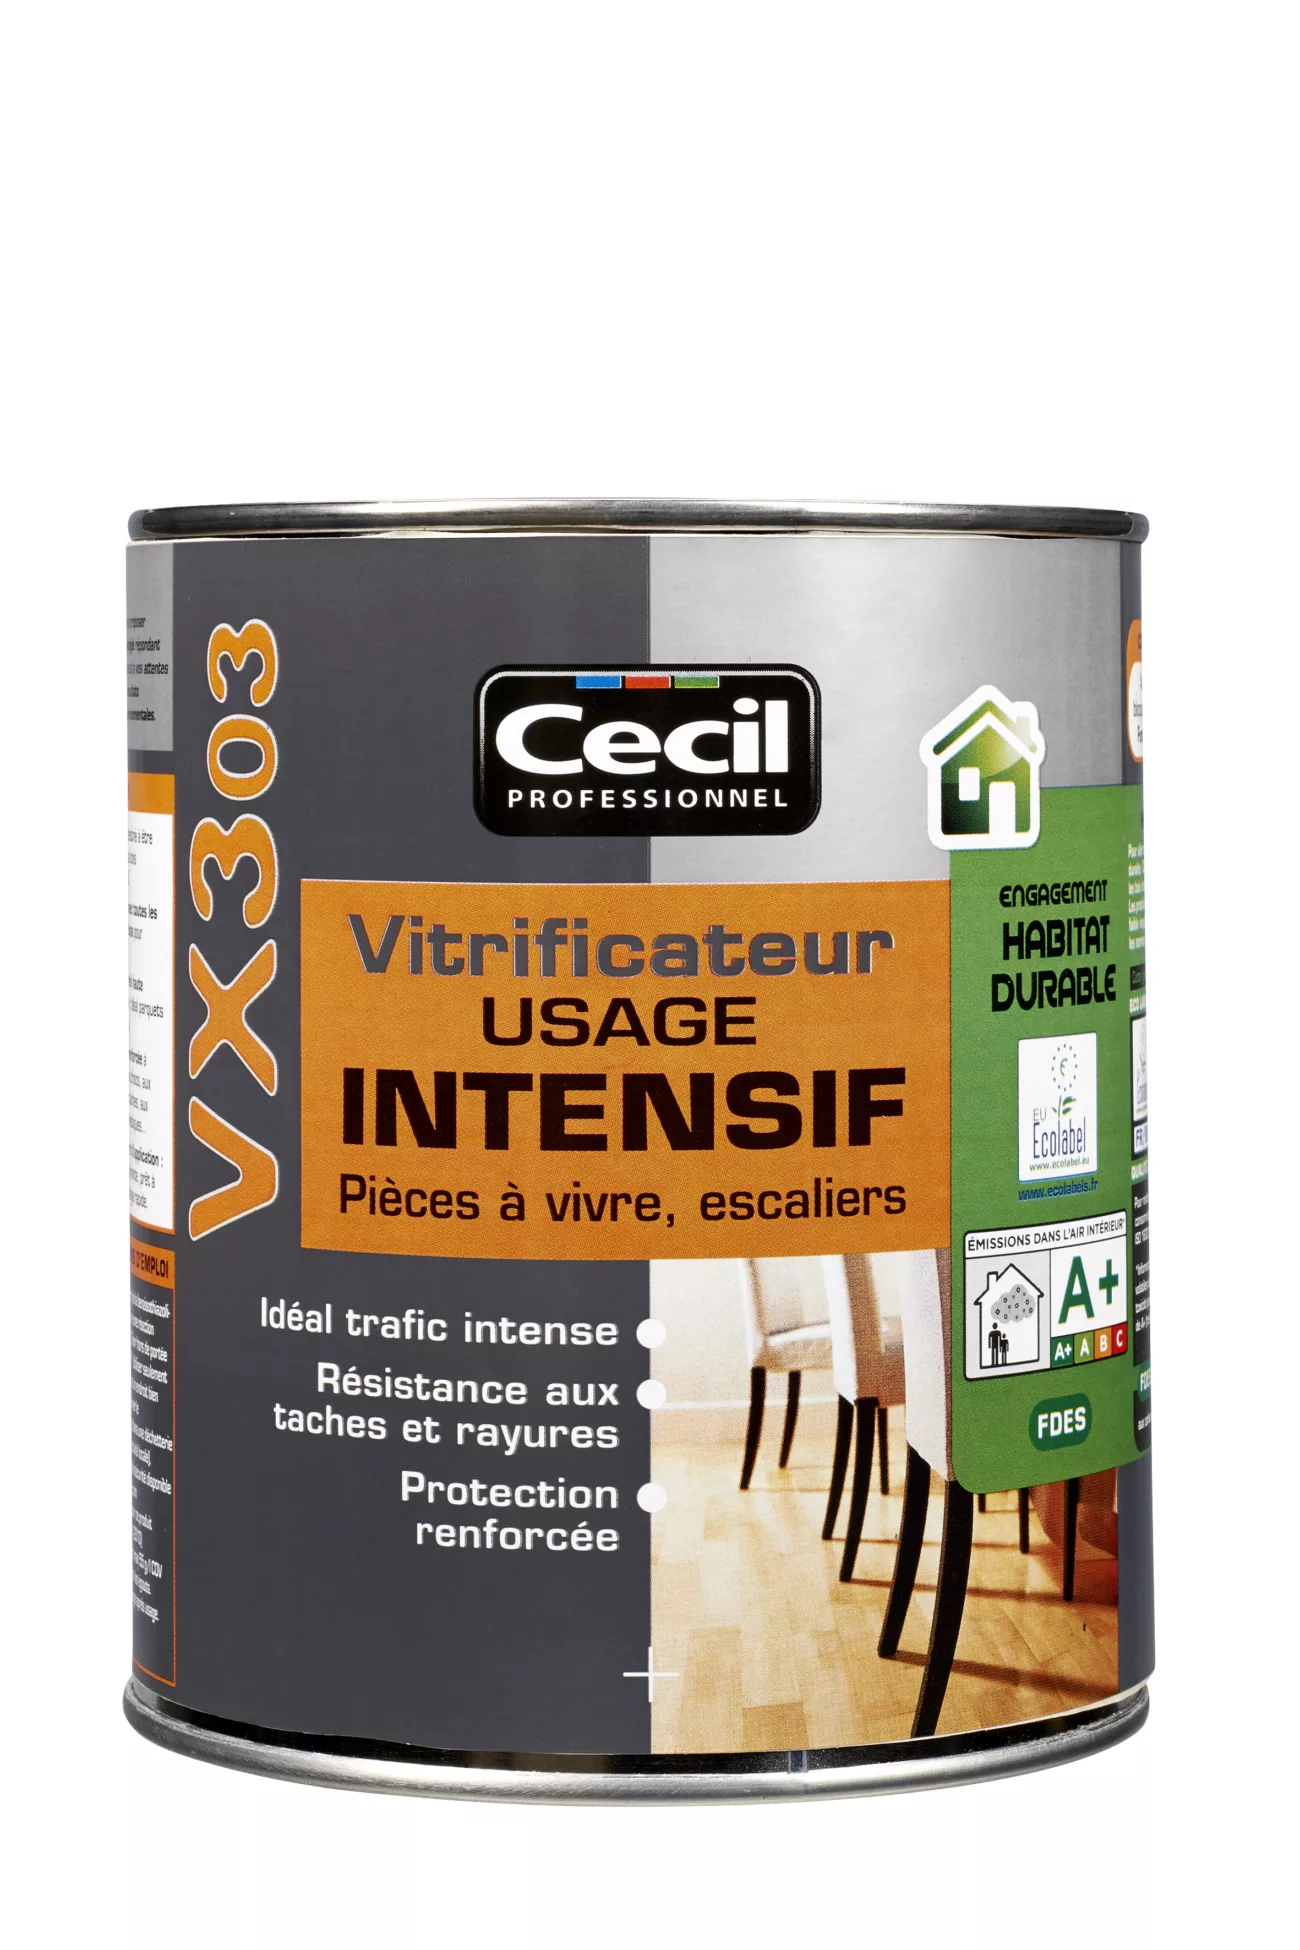 bois online cecil vx303 vitrificateur usage intensif 10